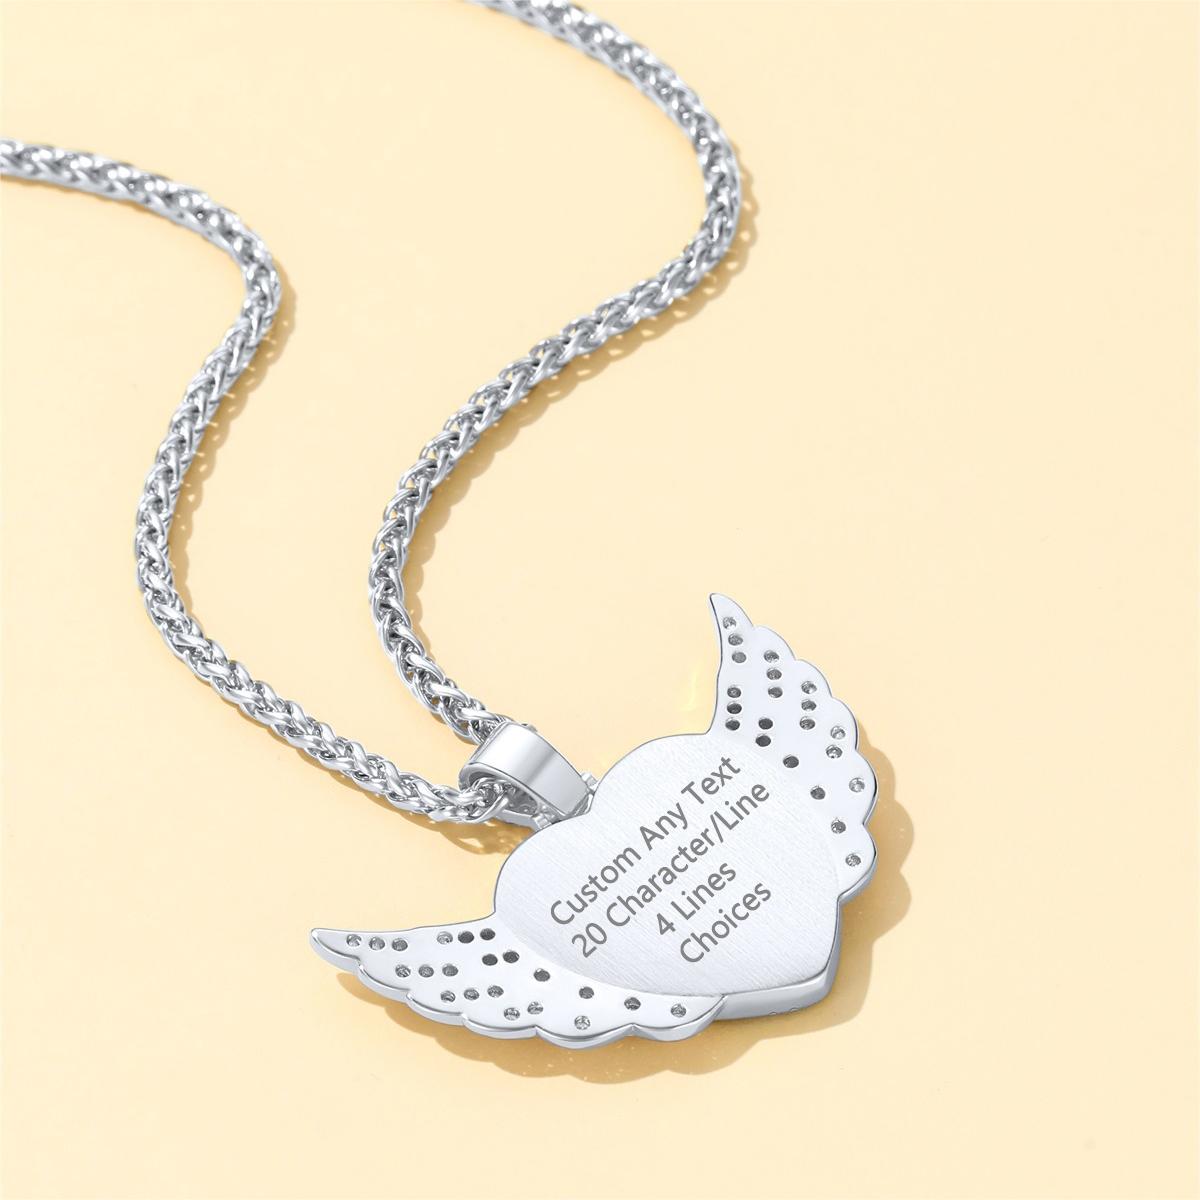 Birthstonesjewelry Personalized CZ Heart Photo Necklace Steel